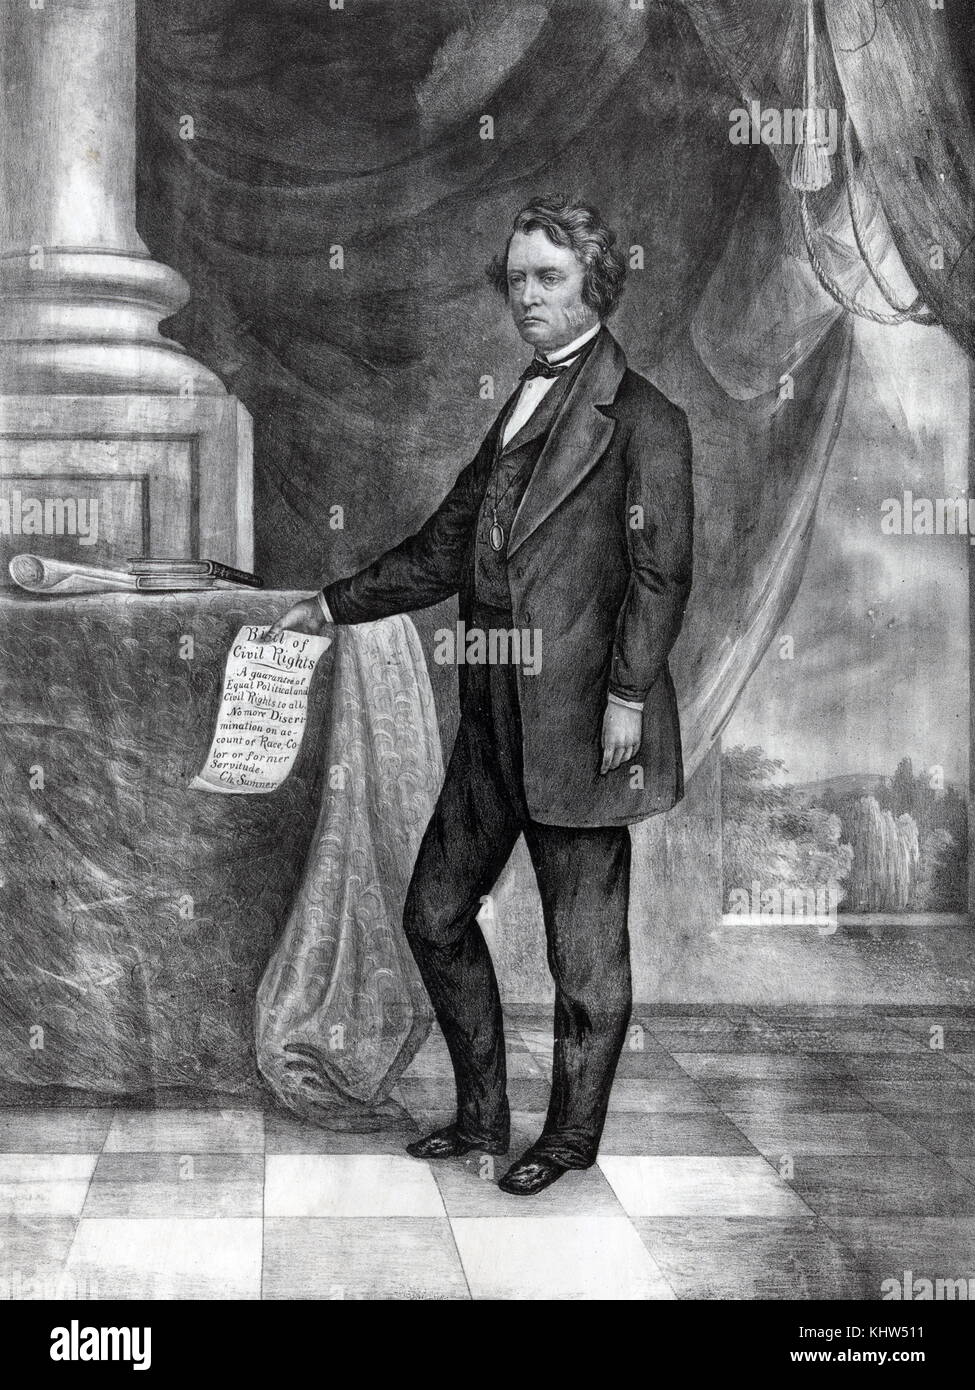 Porträt von Charles Sumner die "Bill der Bürgerlichen Rechte" in der Hand. Chris Sumner (1811-1874) ein US-amerikanischer Politiker, Jurist, Redner und United States Senator aus Massachusetts. Vom 19. Jahrhundert Stockfoto